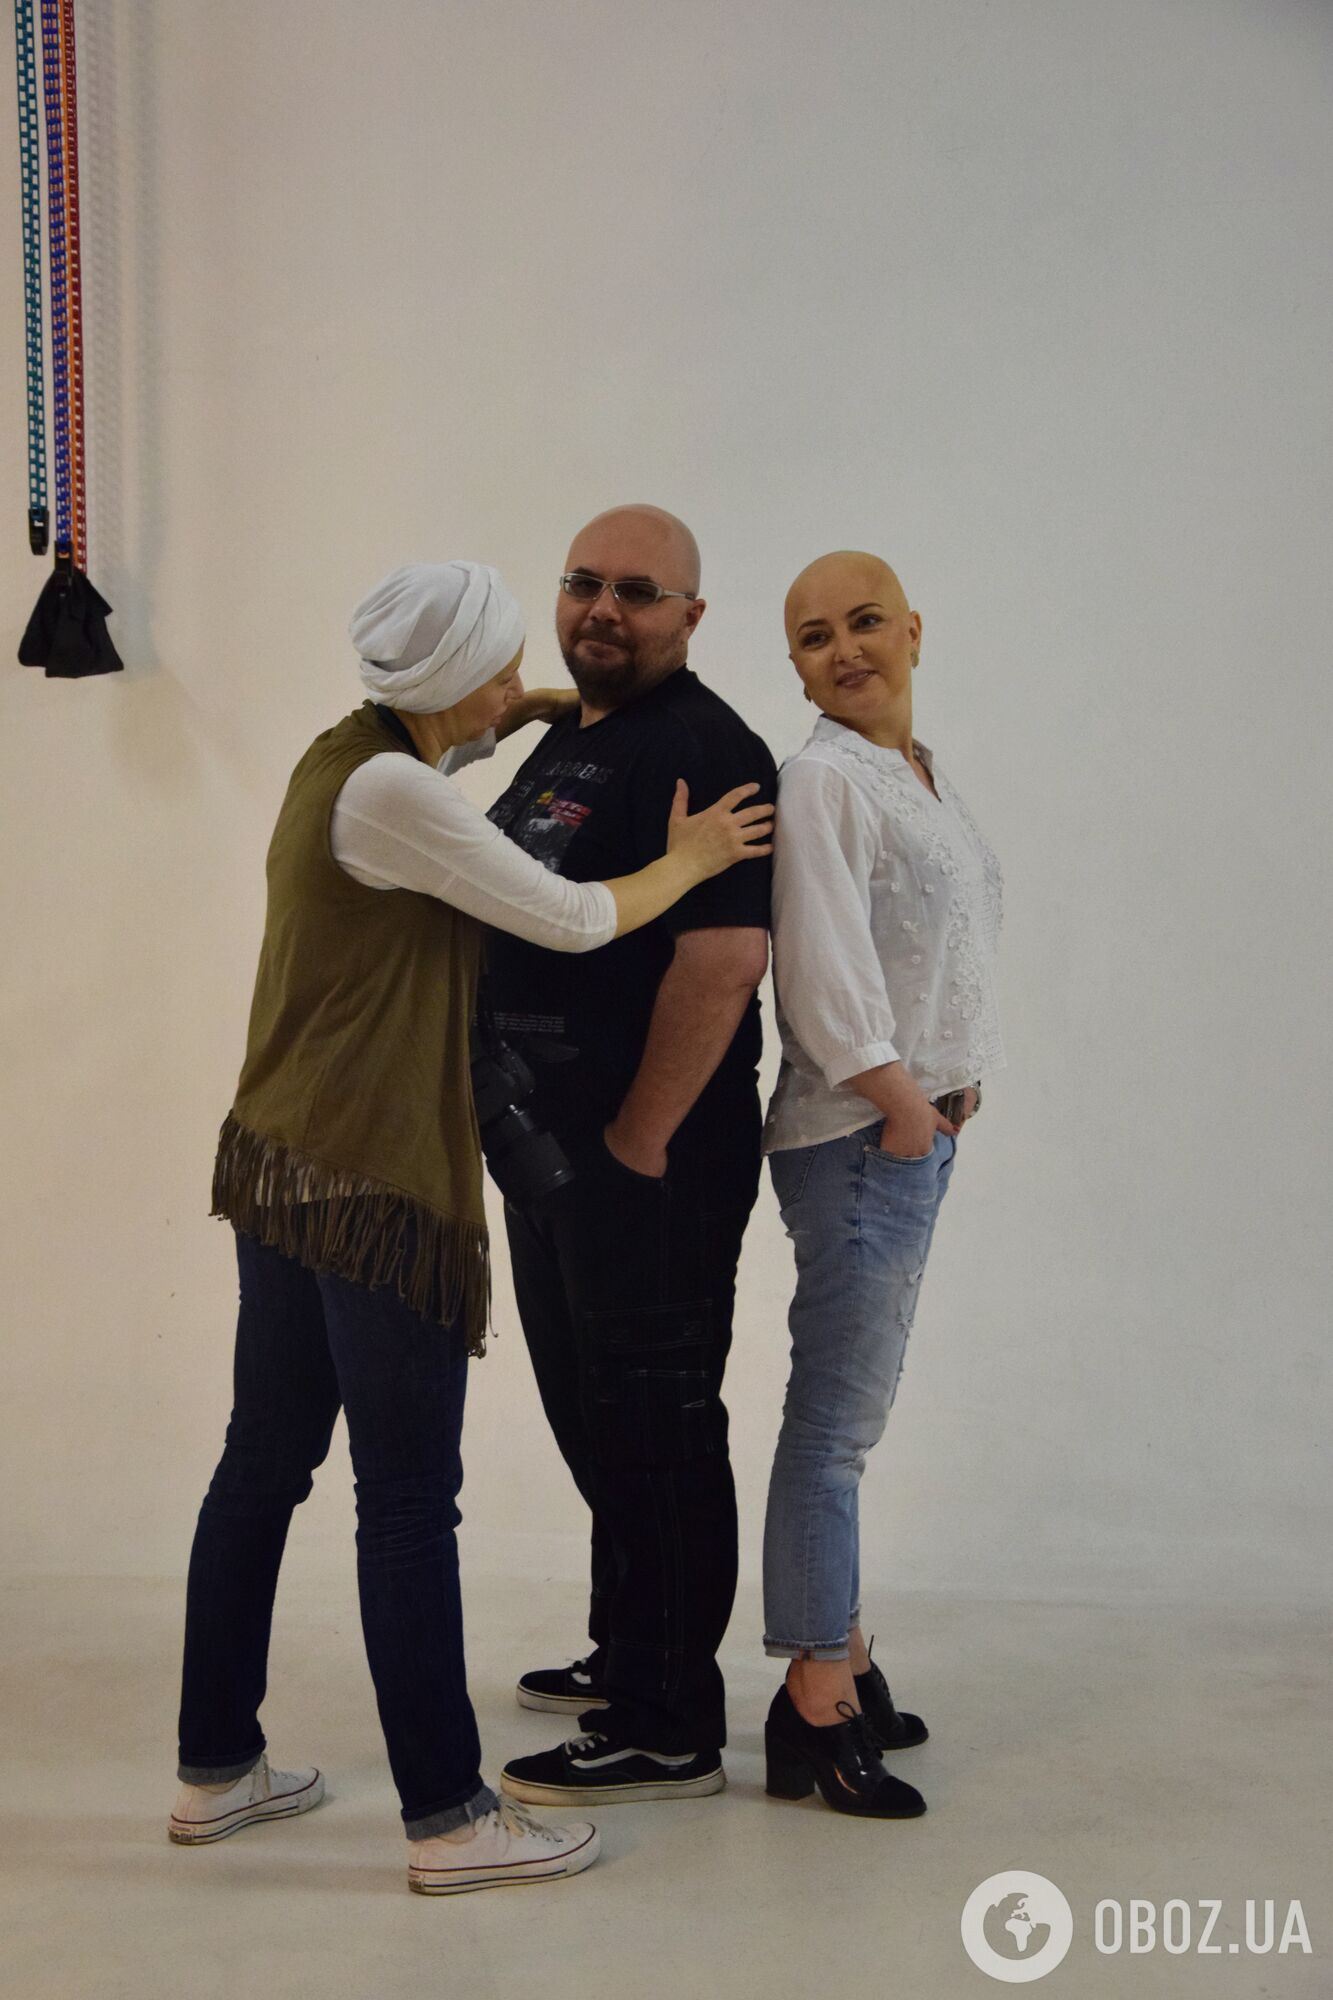 "Рак - не приговор": в Украине стартовал яркий проект с участием звезд